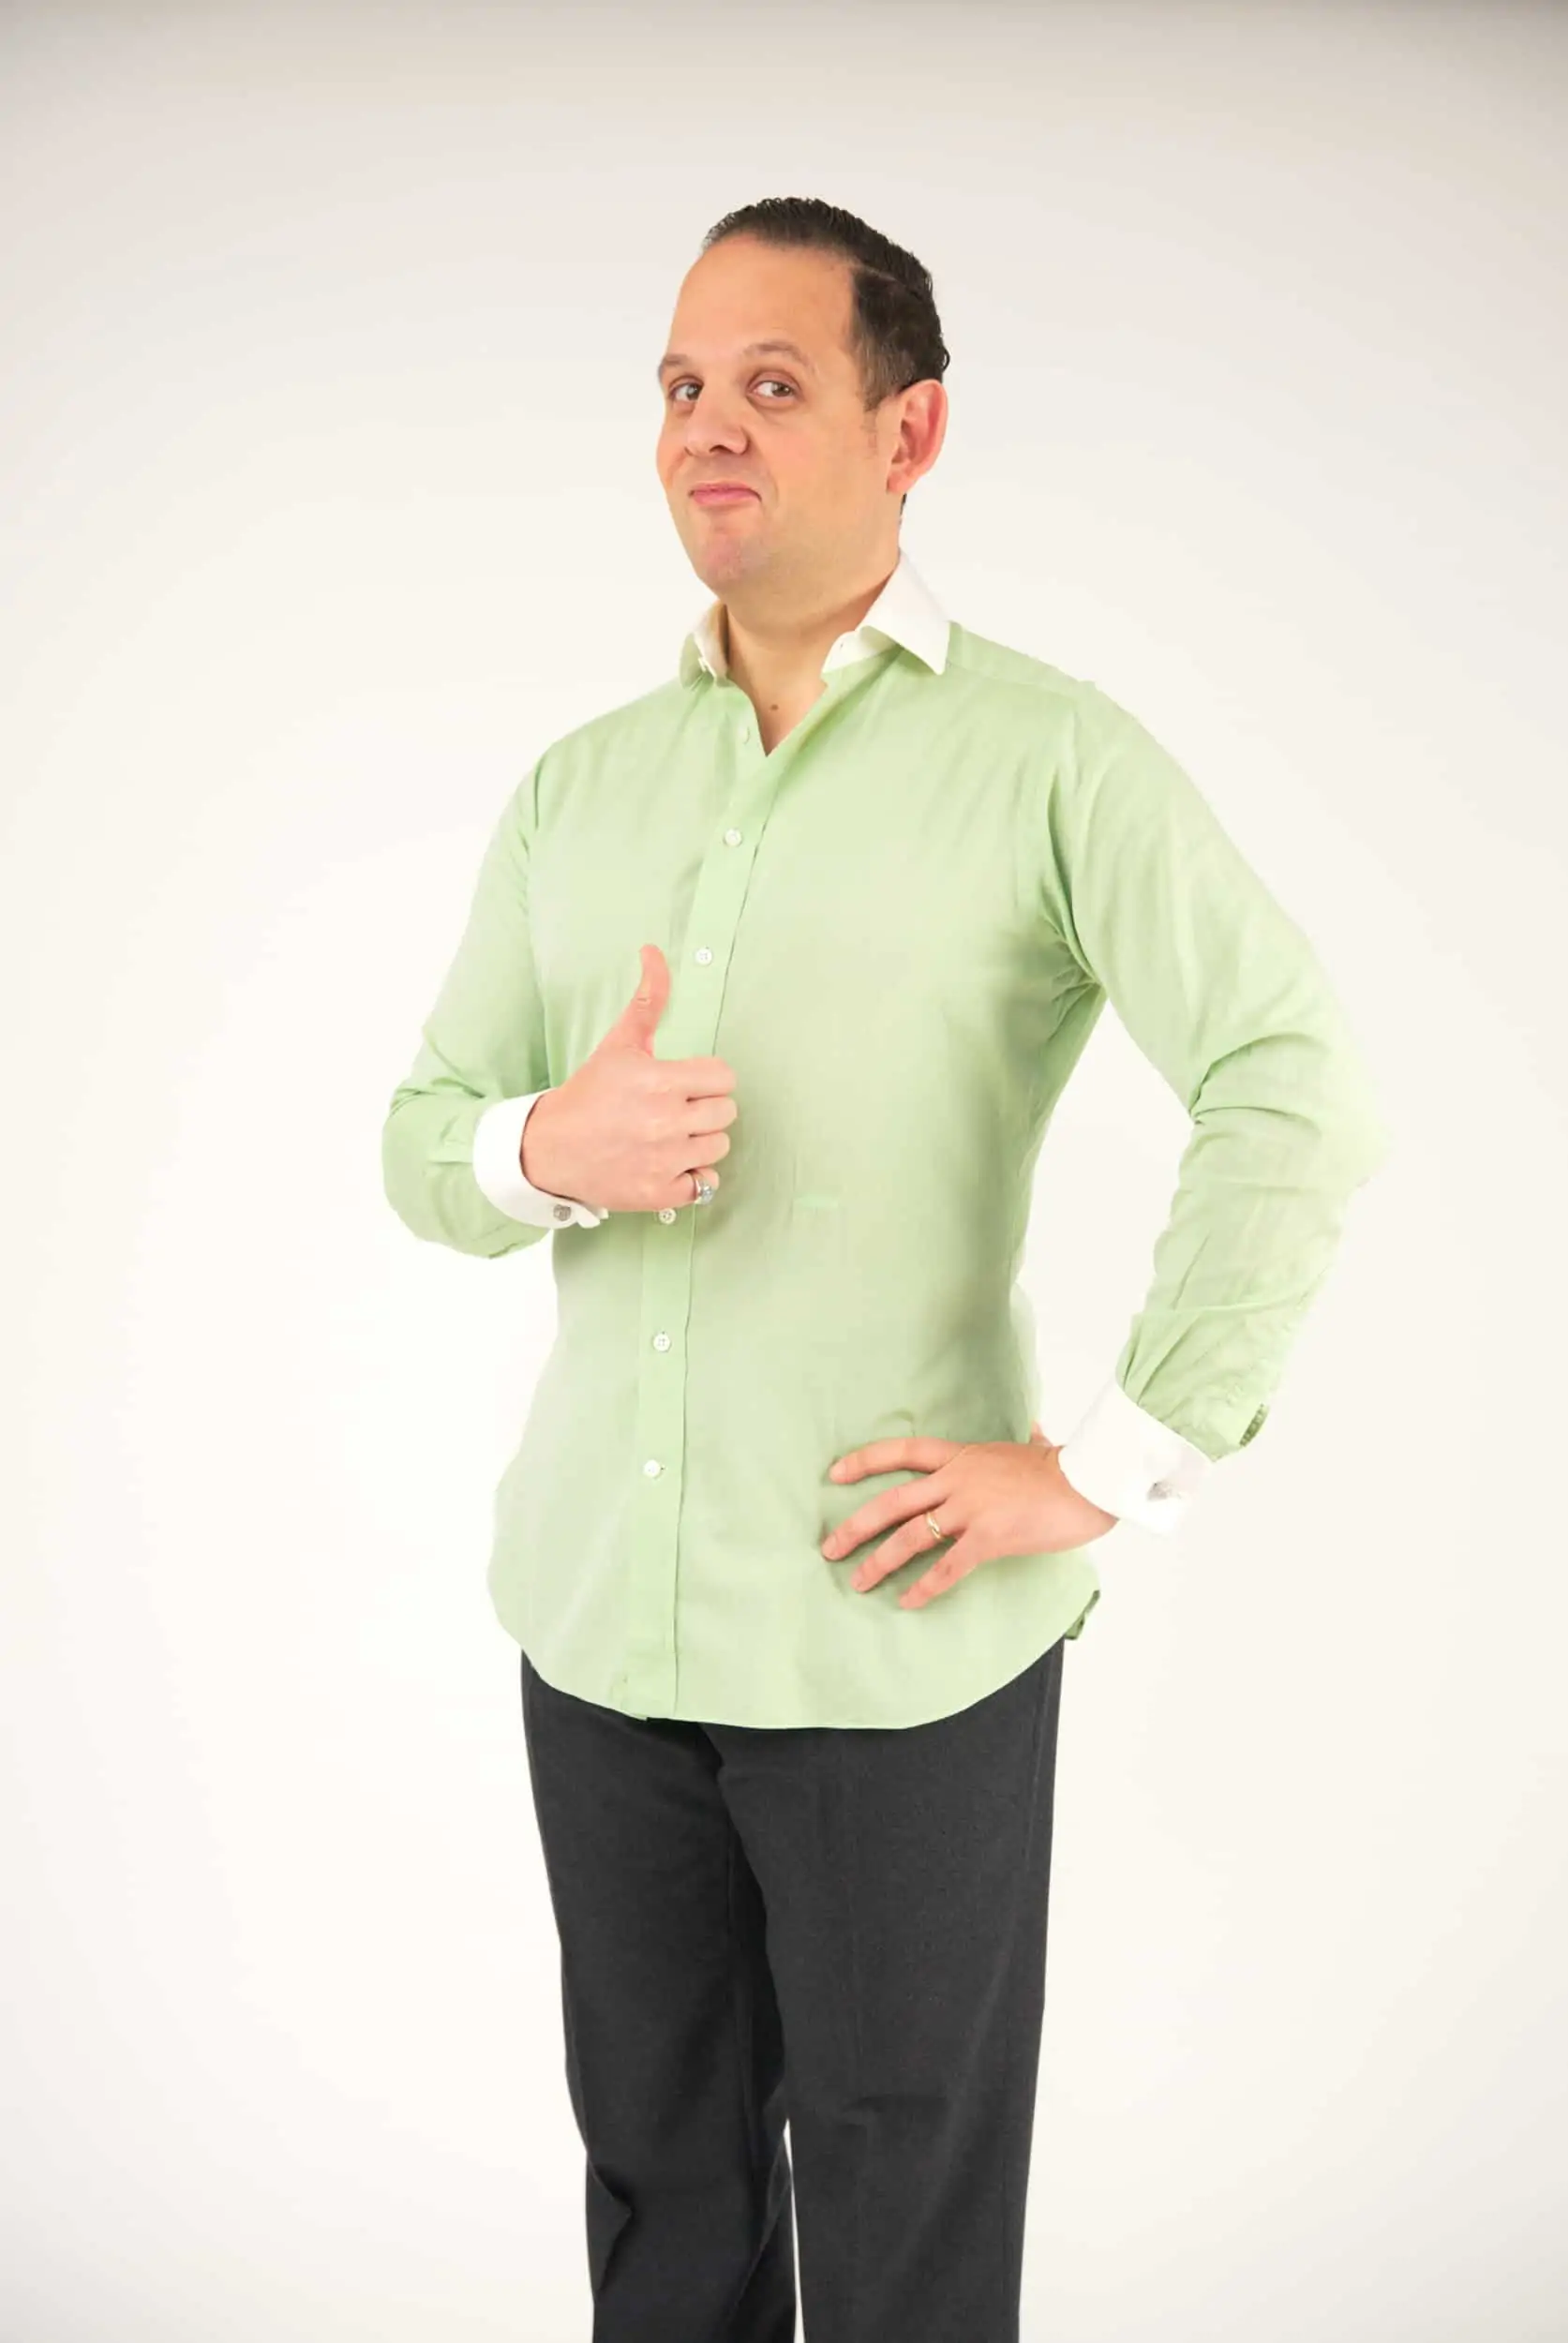 Men's Dress Shirt Guide – Fit, Collar, Cuffs & Details